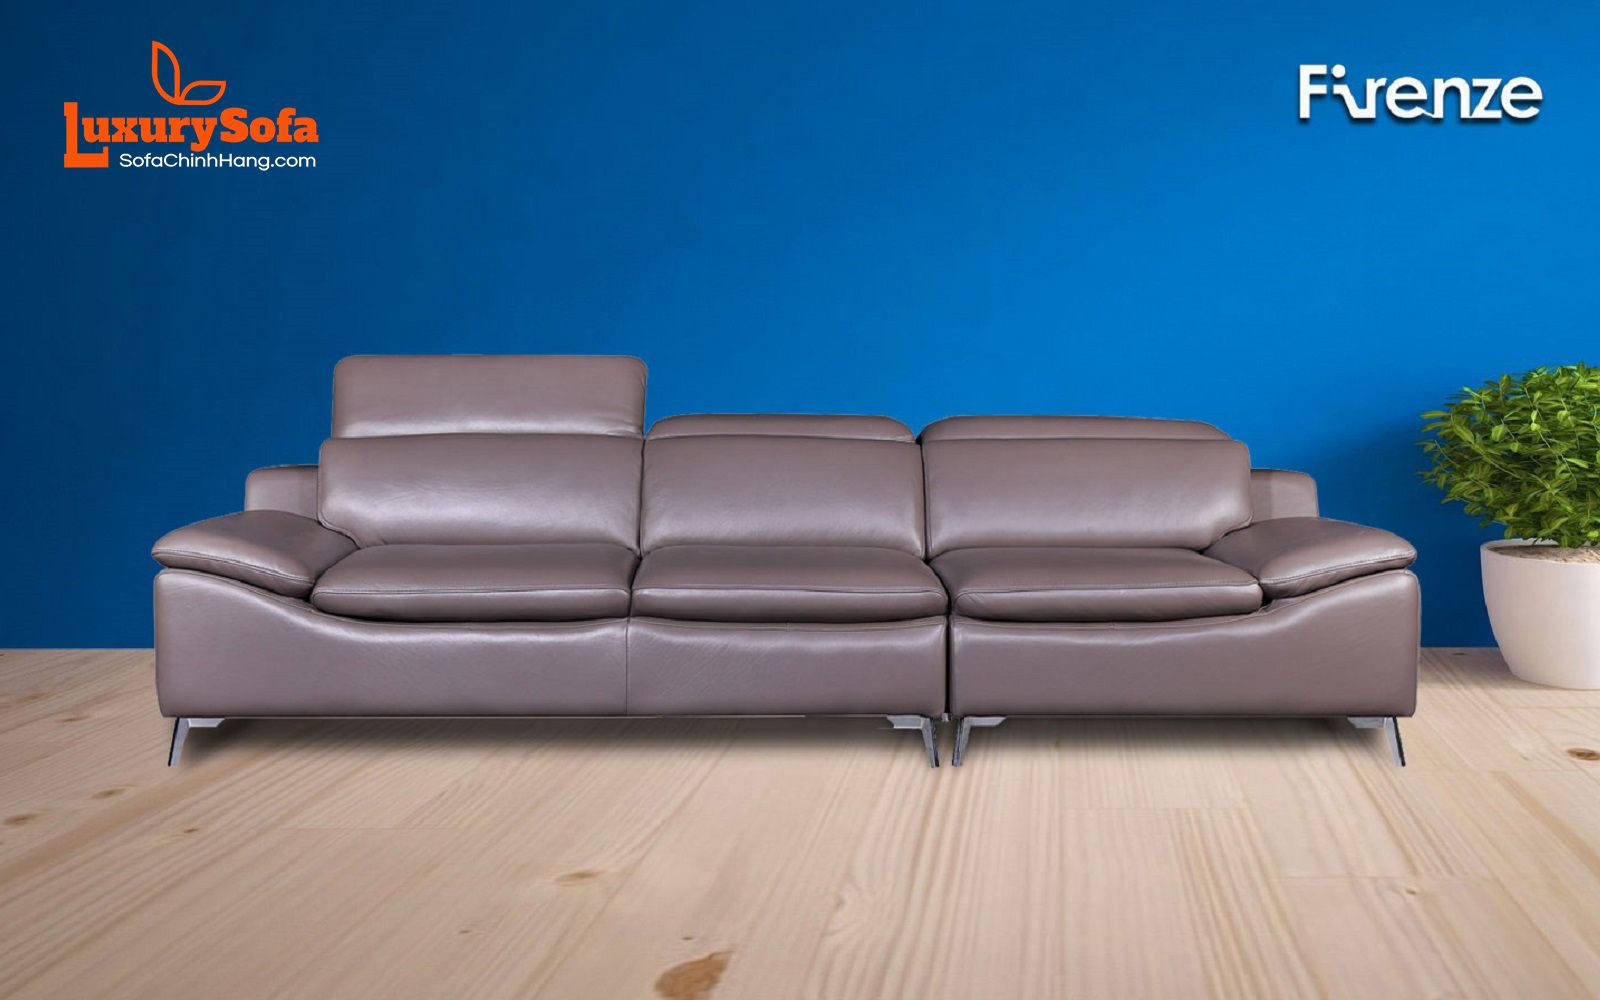 Ghế sofa đẹp sẽ giúp căn phòng của bạn trở nên thanh lịch và sang trọng hơn bao giờ hết. Với màu sắc đa dạng, chất liệu bền và kiểu dáng đẹp mắt, ghế sofa đẹp chắc chắn sẽ làm say mê mọi khách hàng khó tính nhất. Hãy xem qua hình ảnh để tận hưởng sự tuyệt vời của ghế sofa đẹp nhất!